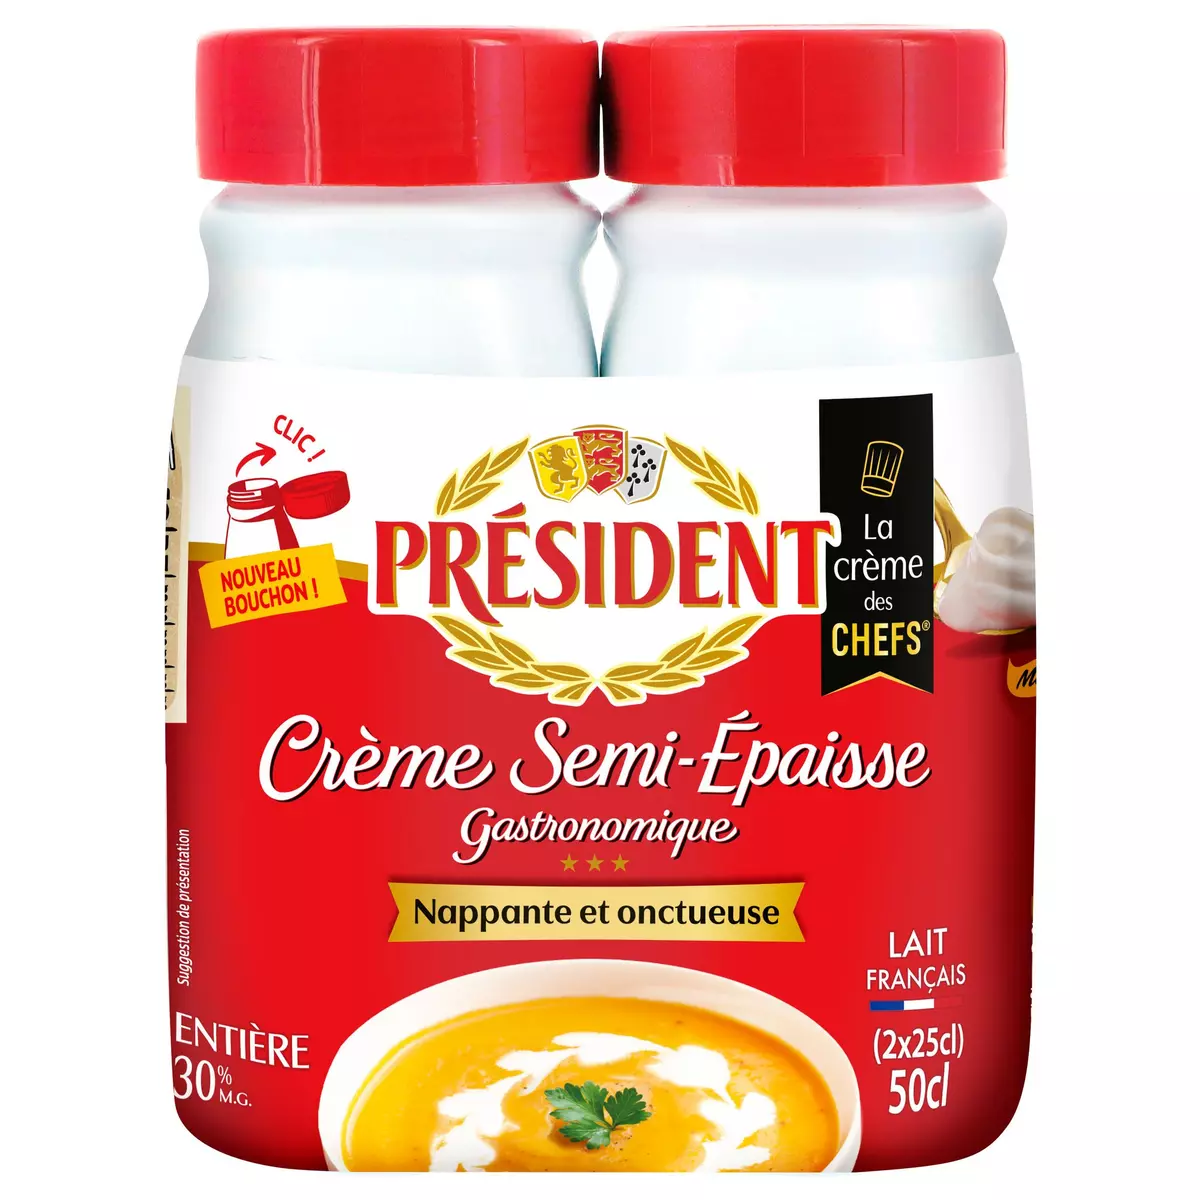 PRESIDENT Crème semi-épaisse entière gastronomique 30%MG 2x25cl